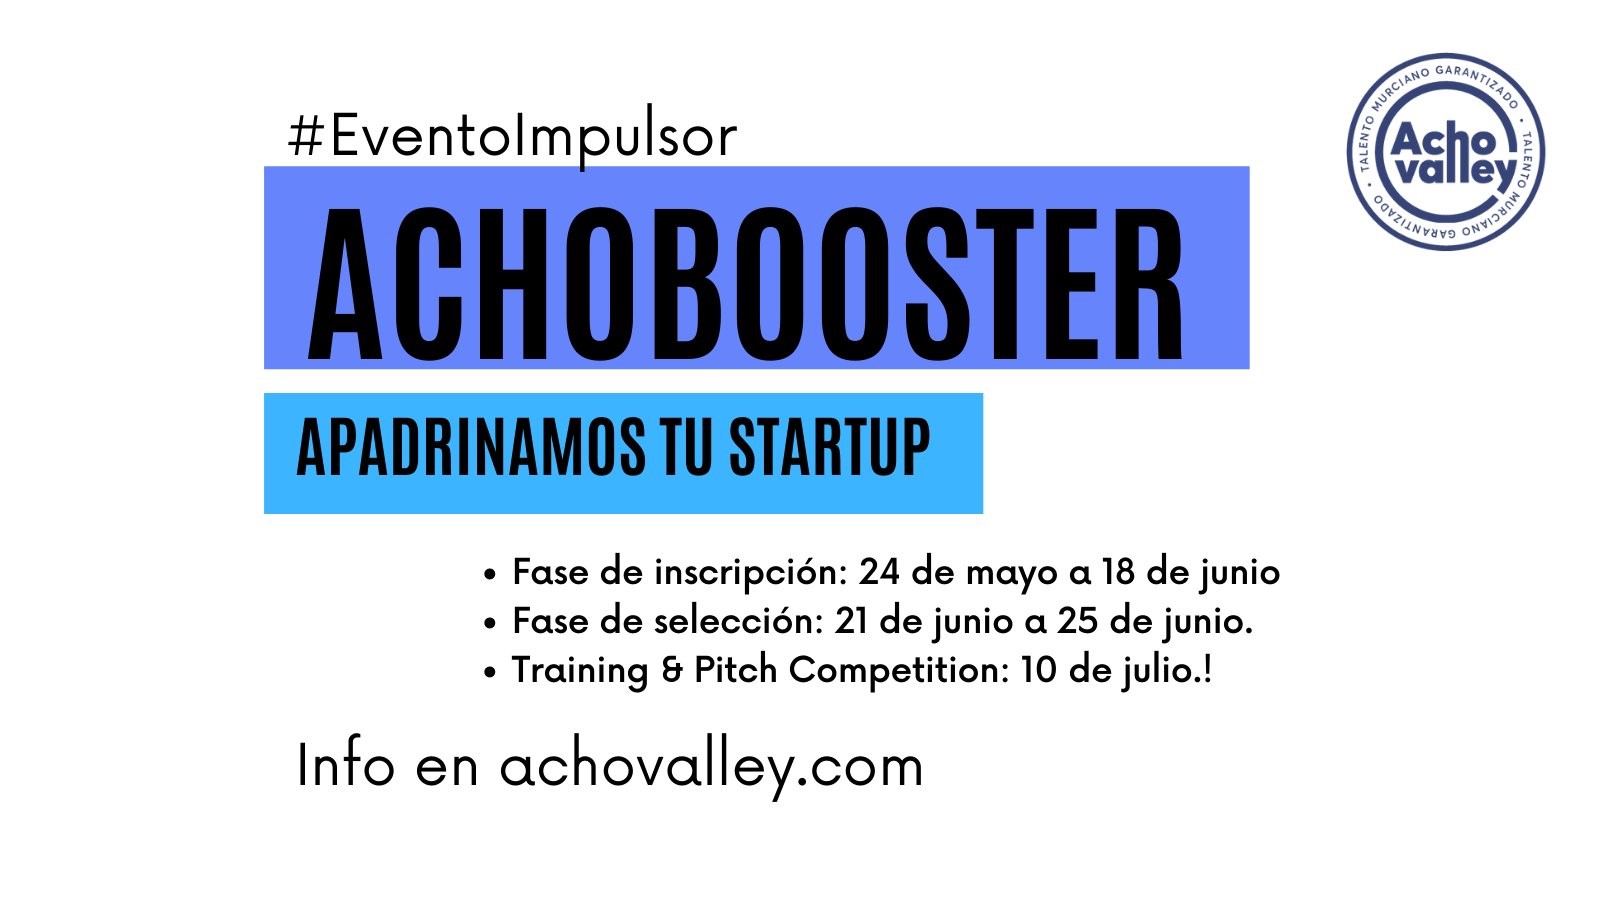 AchoBooster”, la iniciativa de AchoValley para impulsar startups murcianas